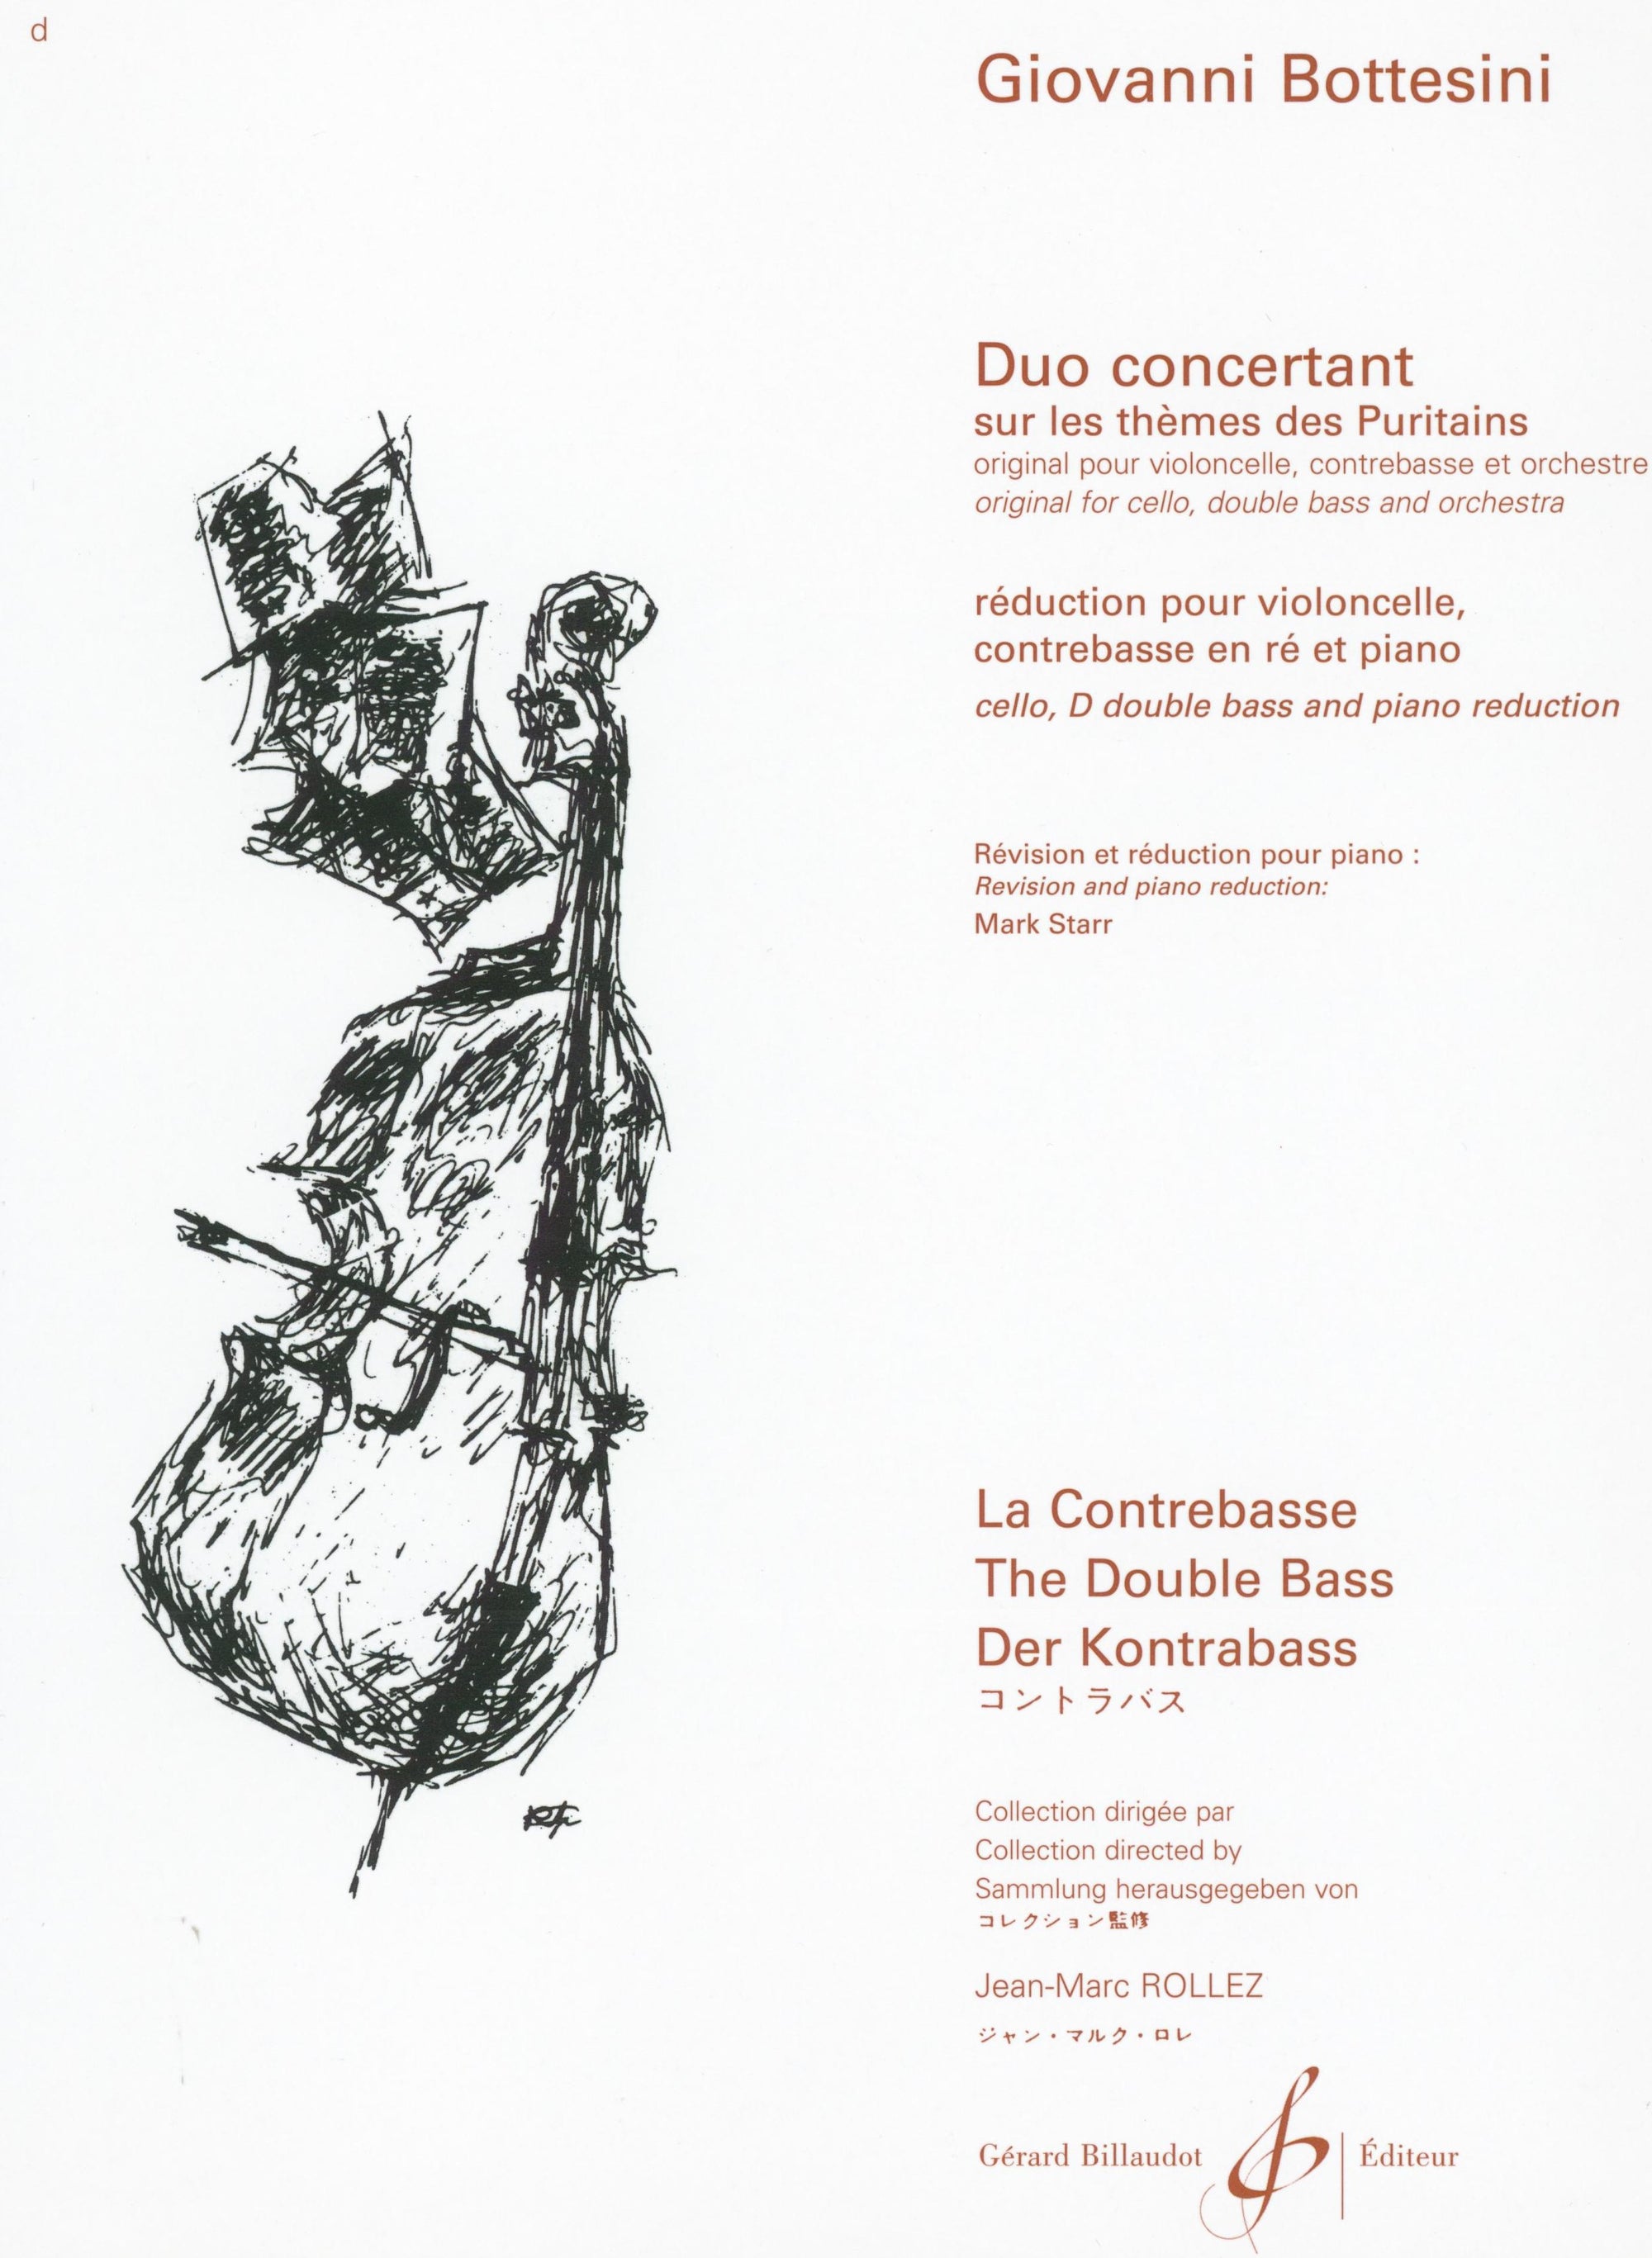 Bottesini: Duo Concertant on "Les thèmes des Puritains"